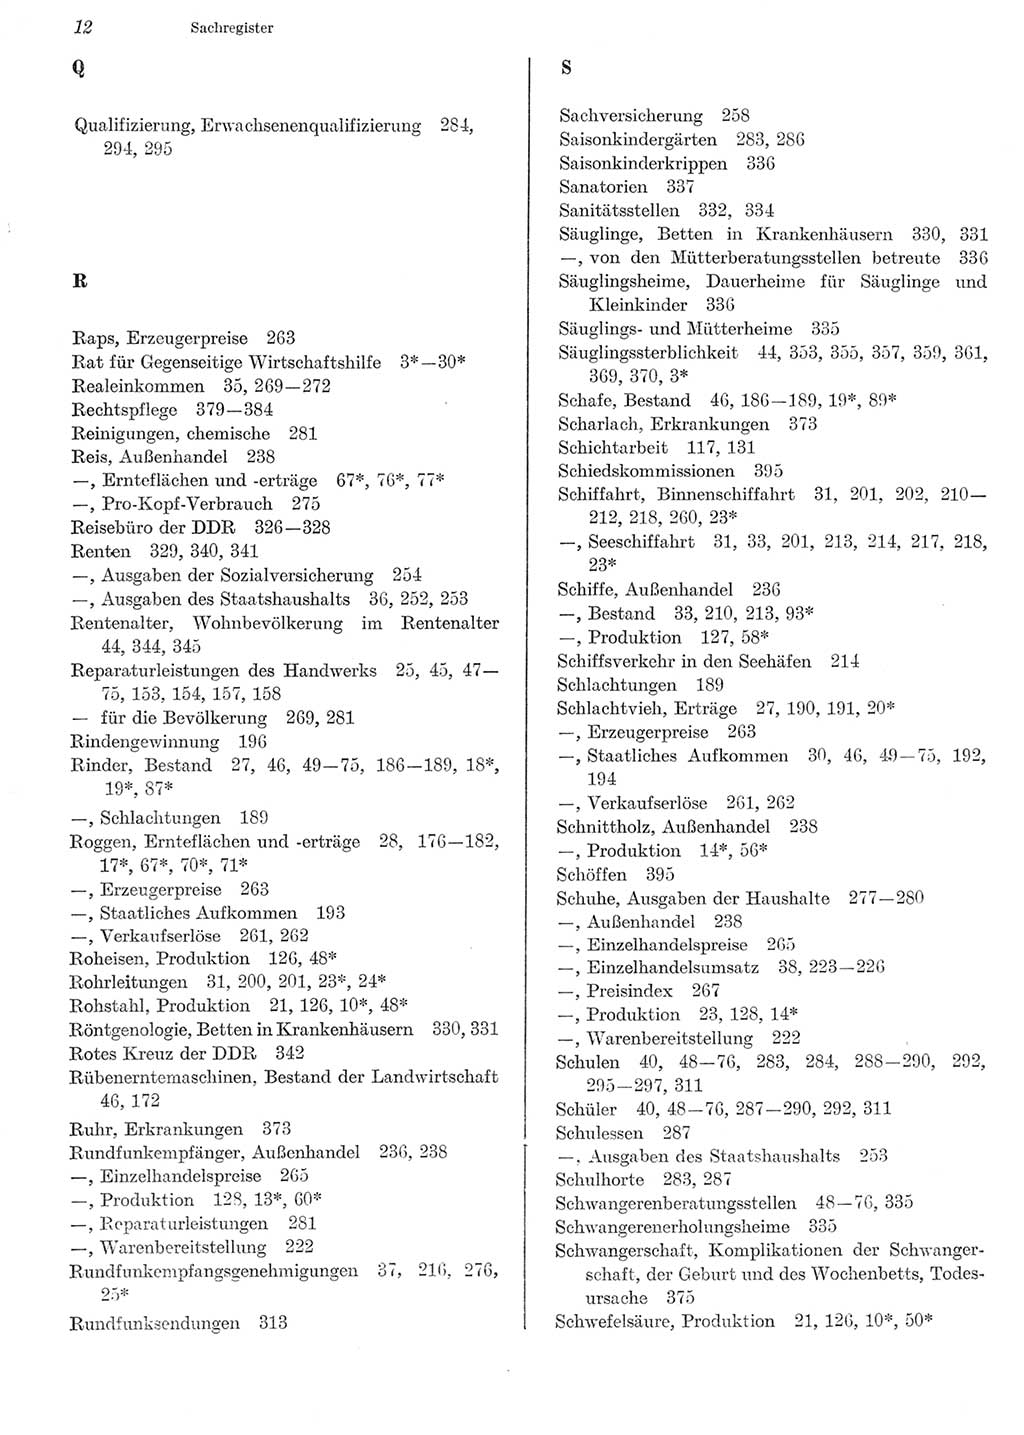 Statistisches Jahrbuch der Deutschen Demokratischen Republik (DDR) 1981, Seite 12 (Stat. Jb. DDR 1981, S. 12)